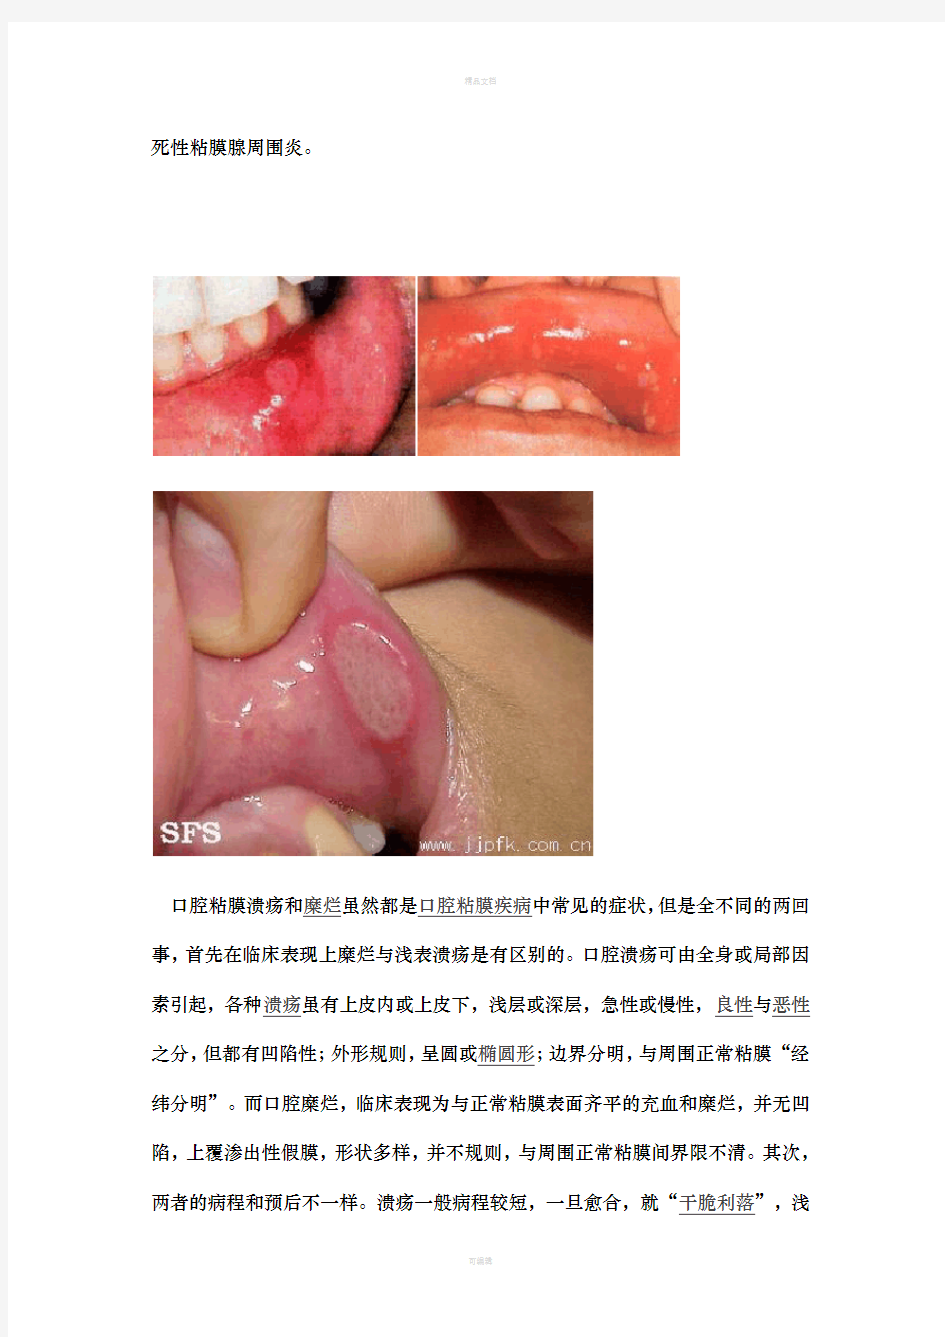 口腔溃疡的治疗方法与预防措施